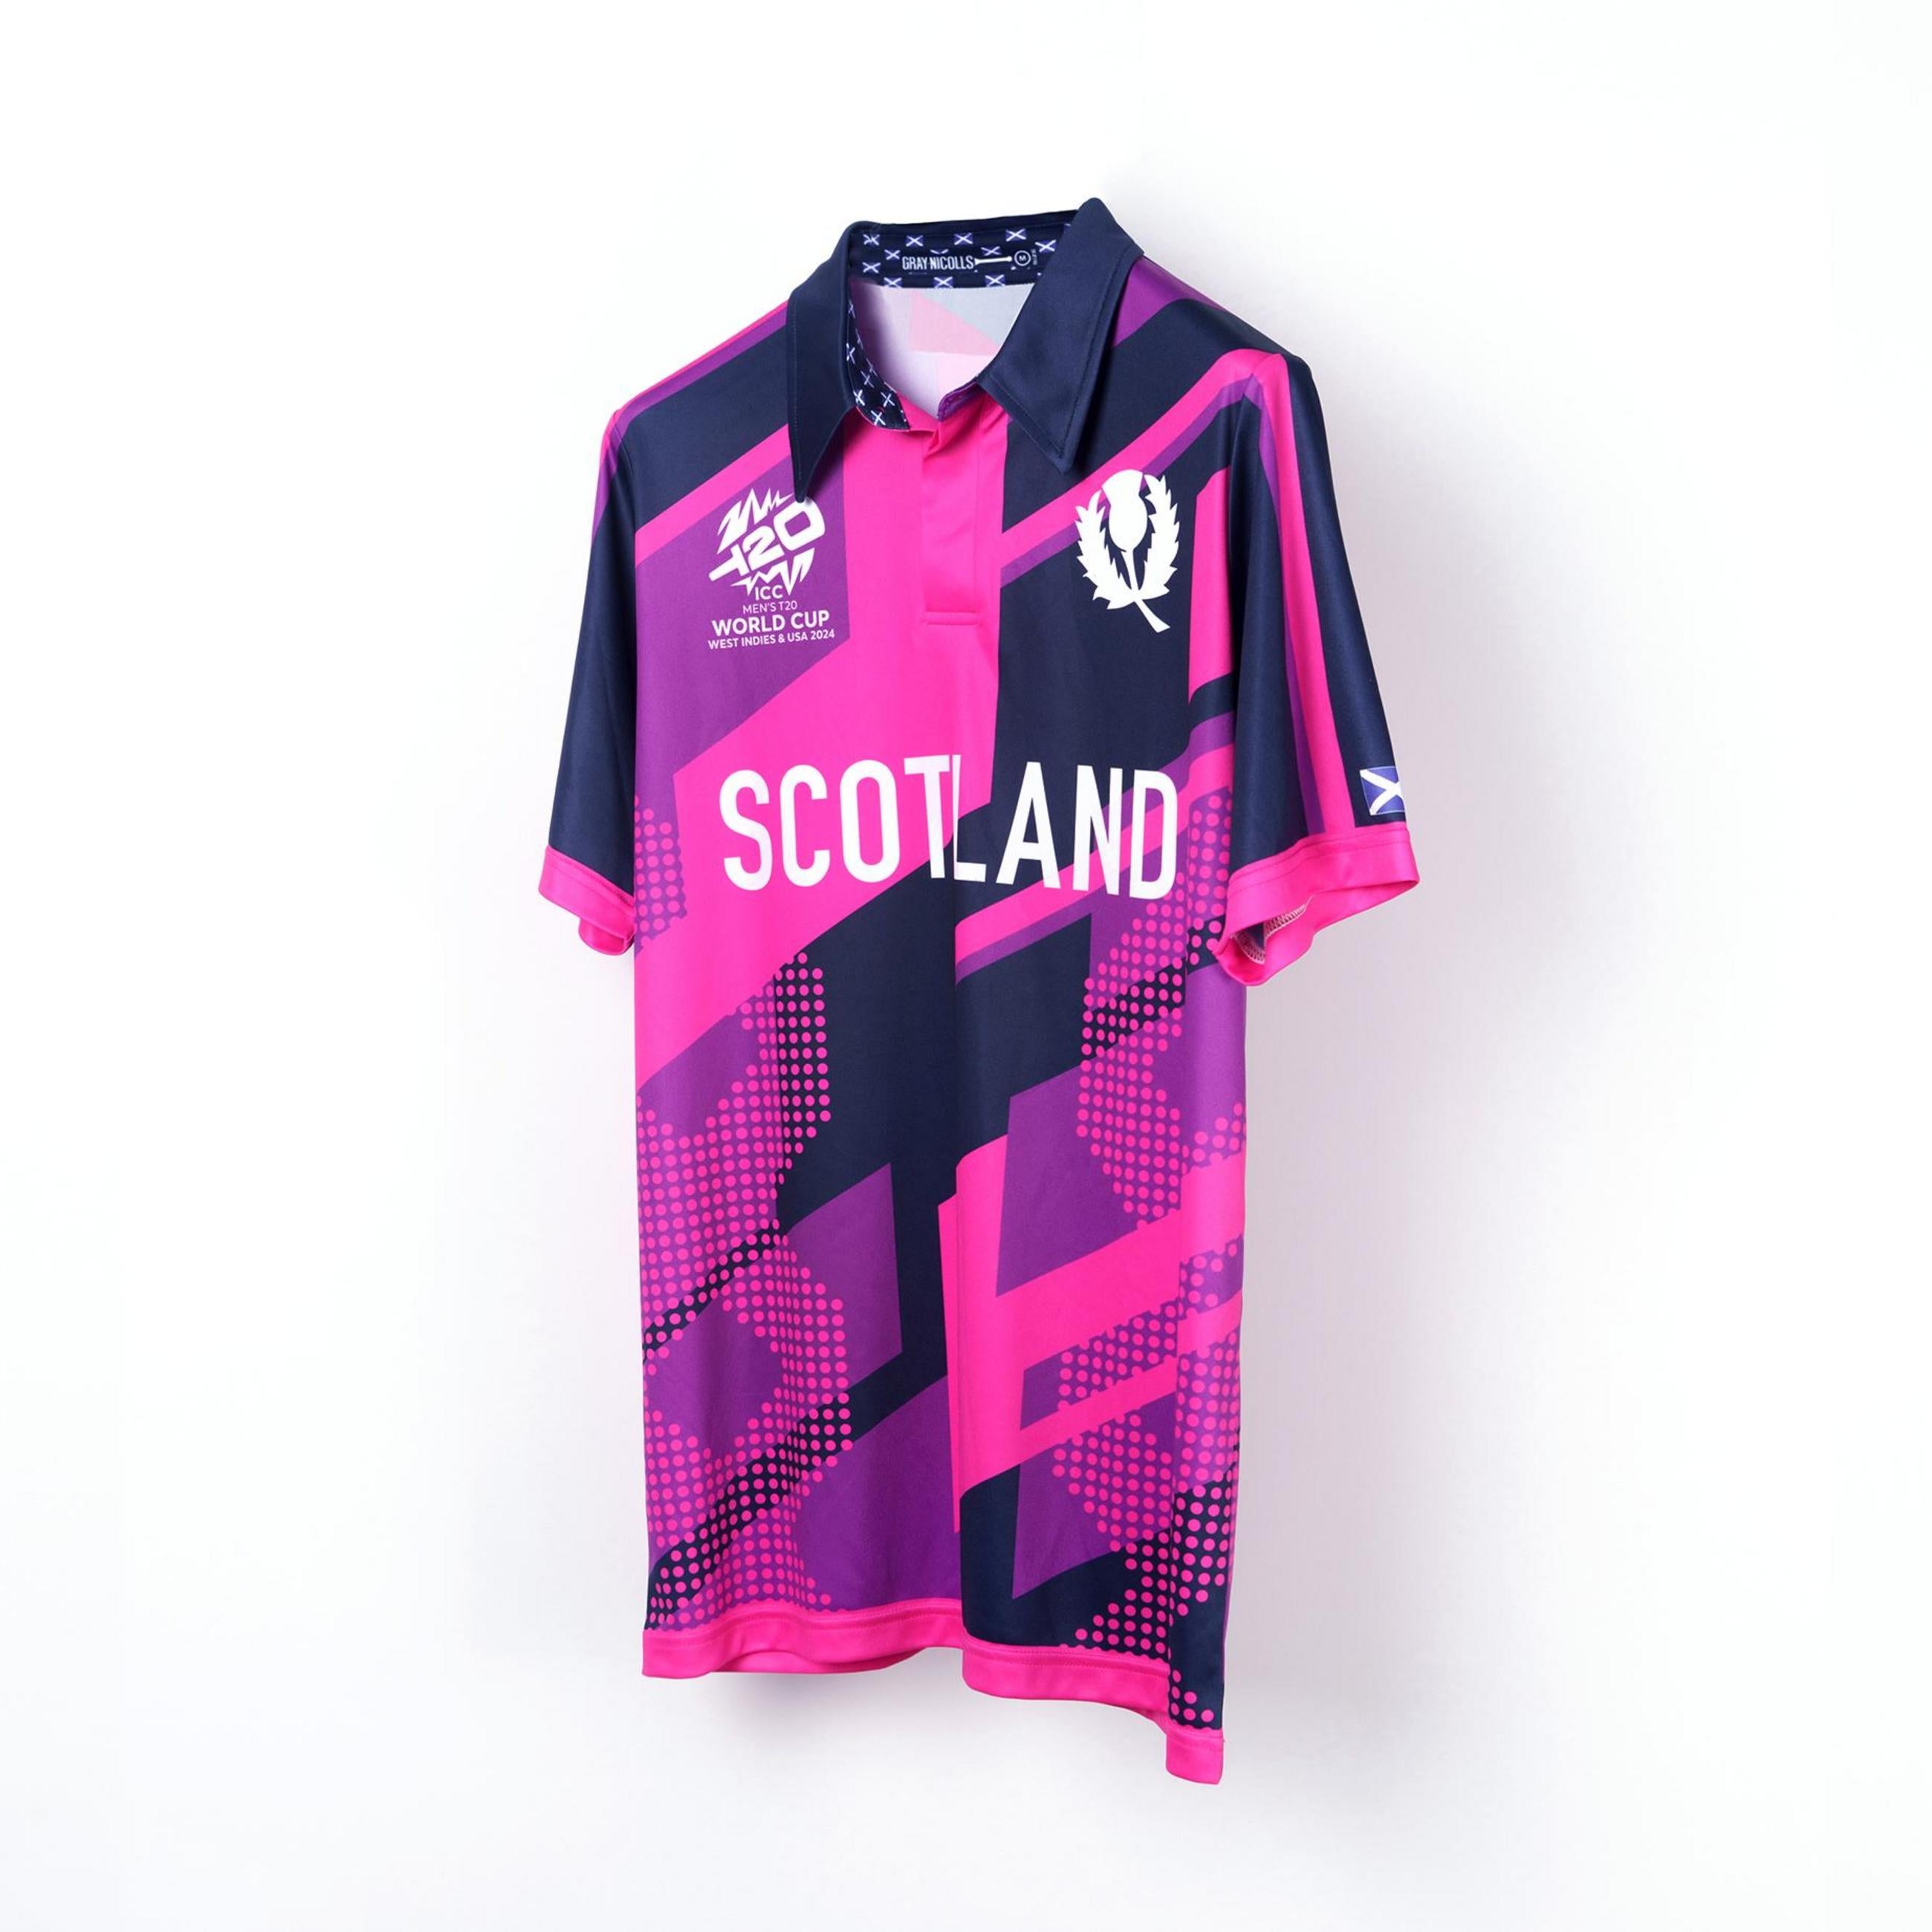 Cricket Scotland T20 World Cup 24 Shirt - Men's Short Sleeve